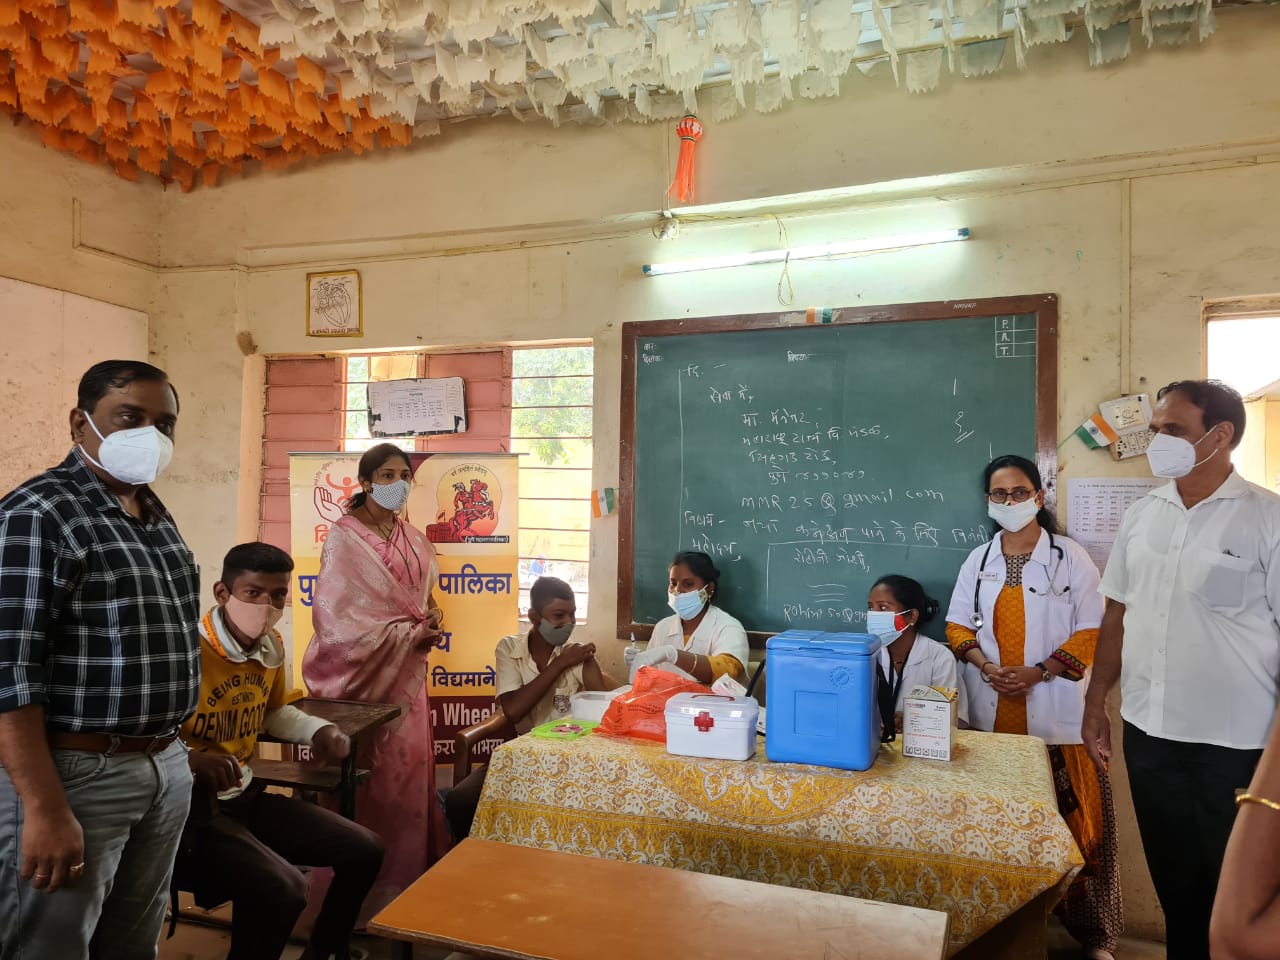 Manjusha Nagpure : शाळांमध्ये लसीकरणास सुरवात – नगरसेविका नागपुरे यांच्या प्रयत्नांना यश